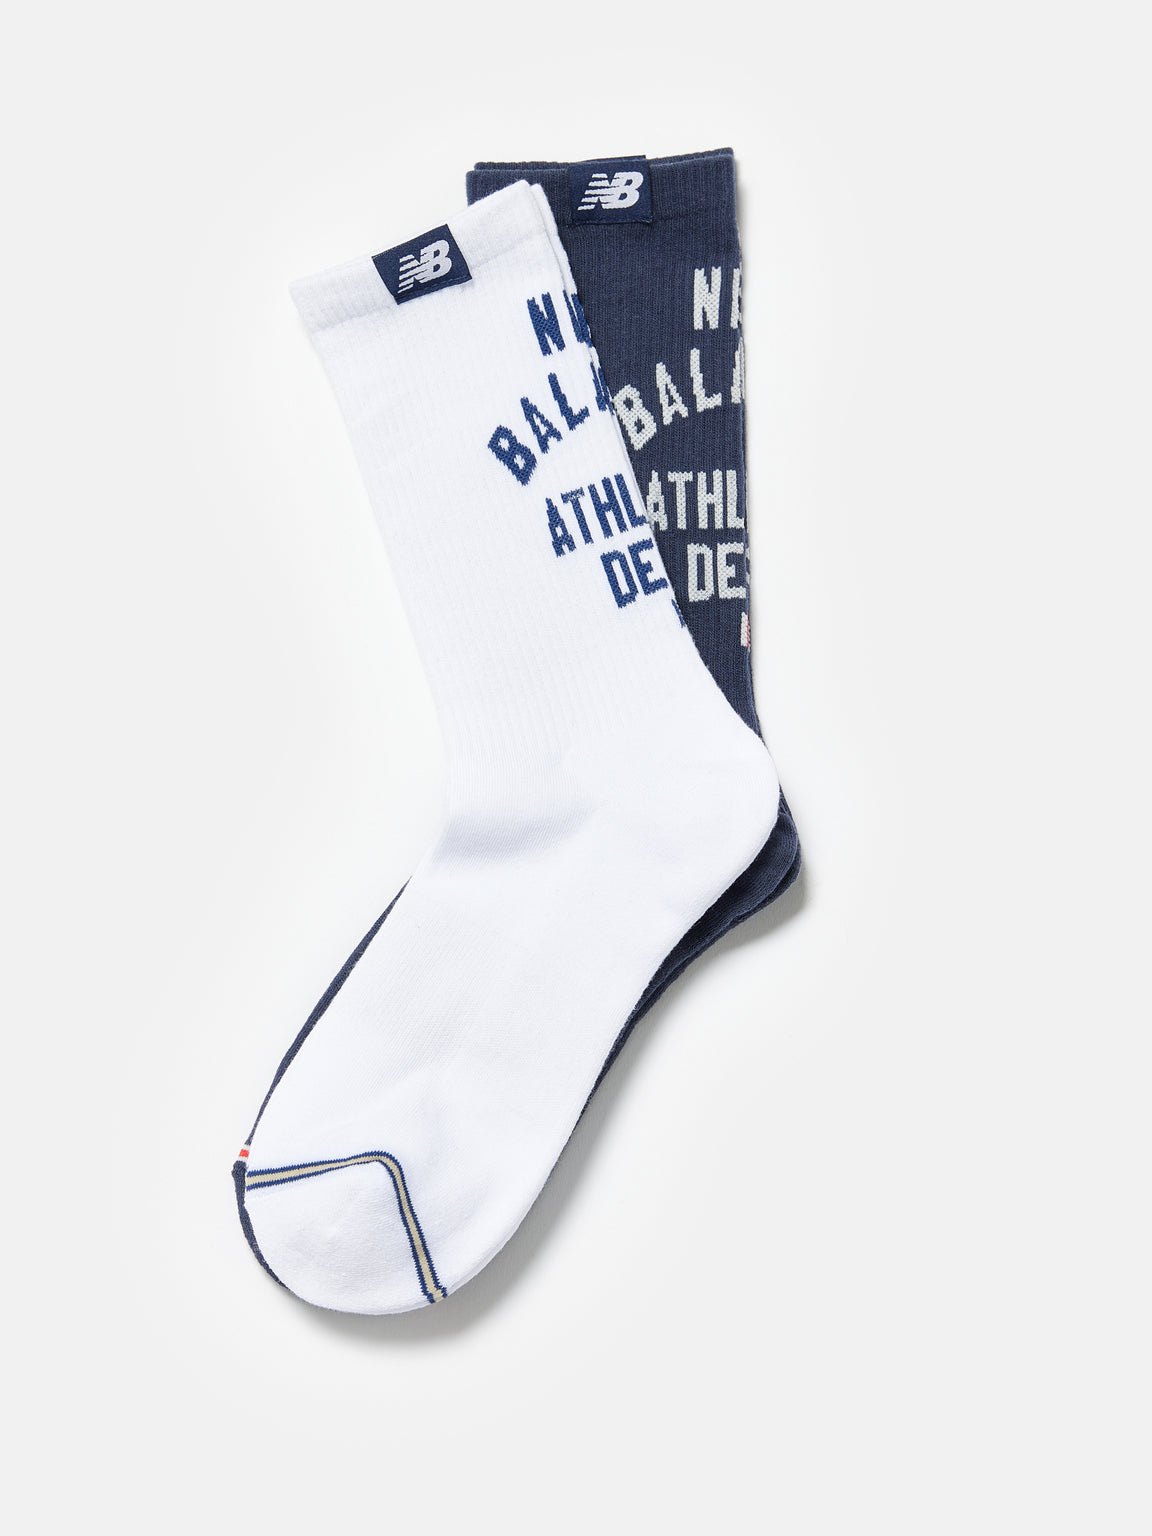 New Balance | Lifestyle Midcalf Crew Socks For Men | Bellerose E-shop